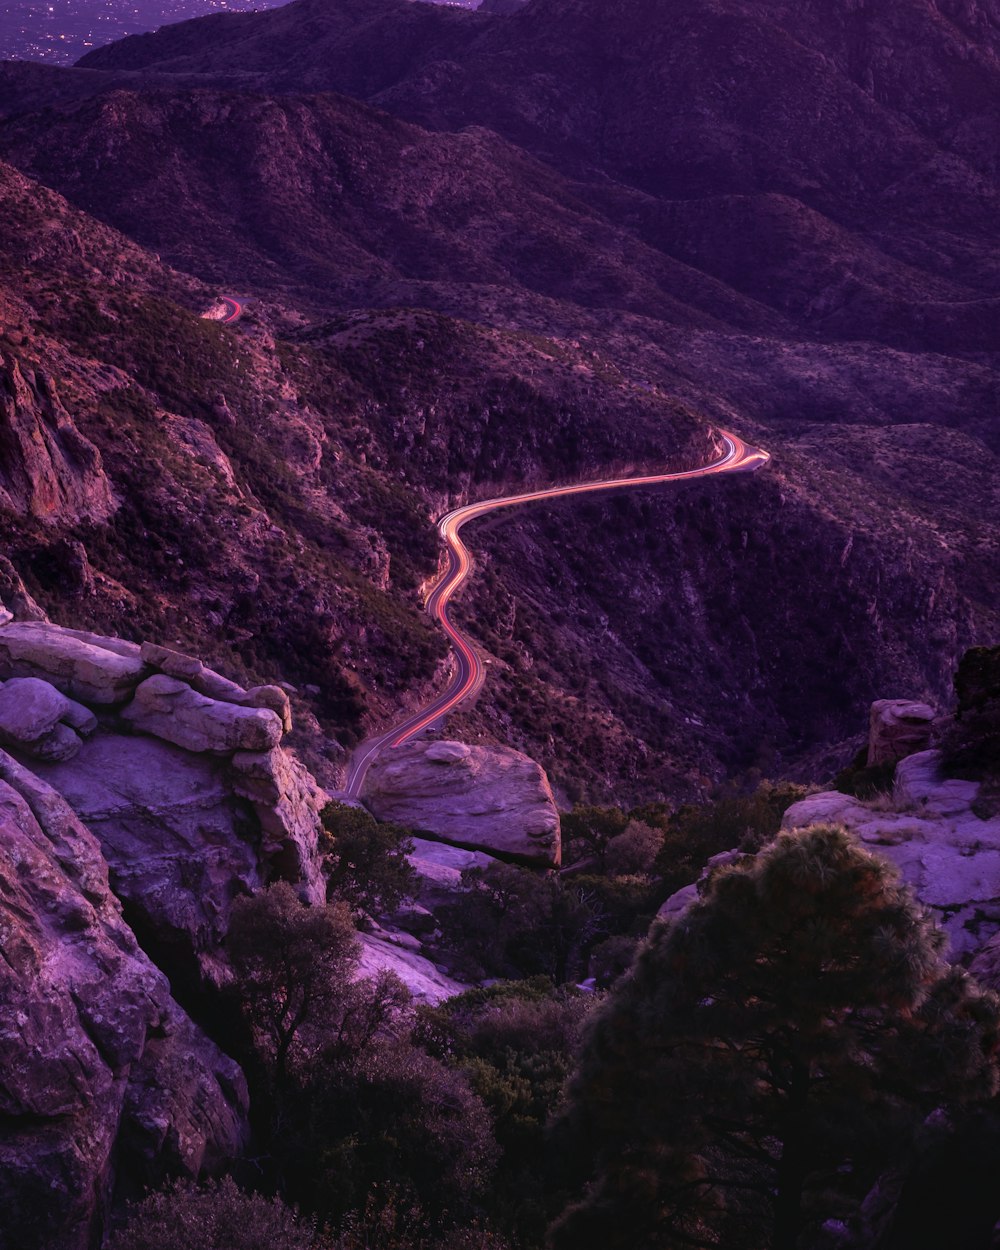 Carretera en la cresta de la montaña